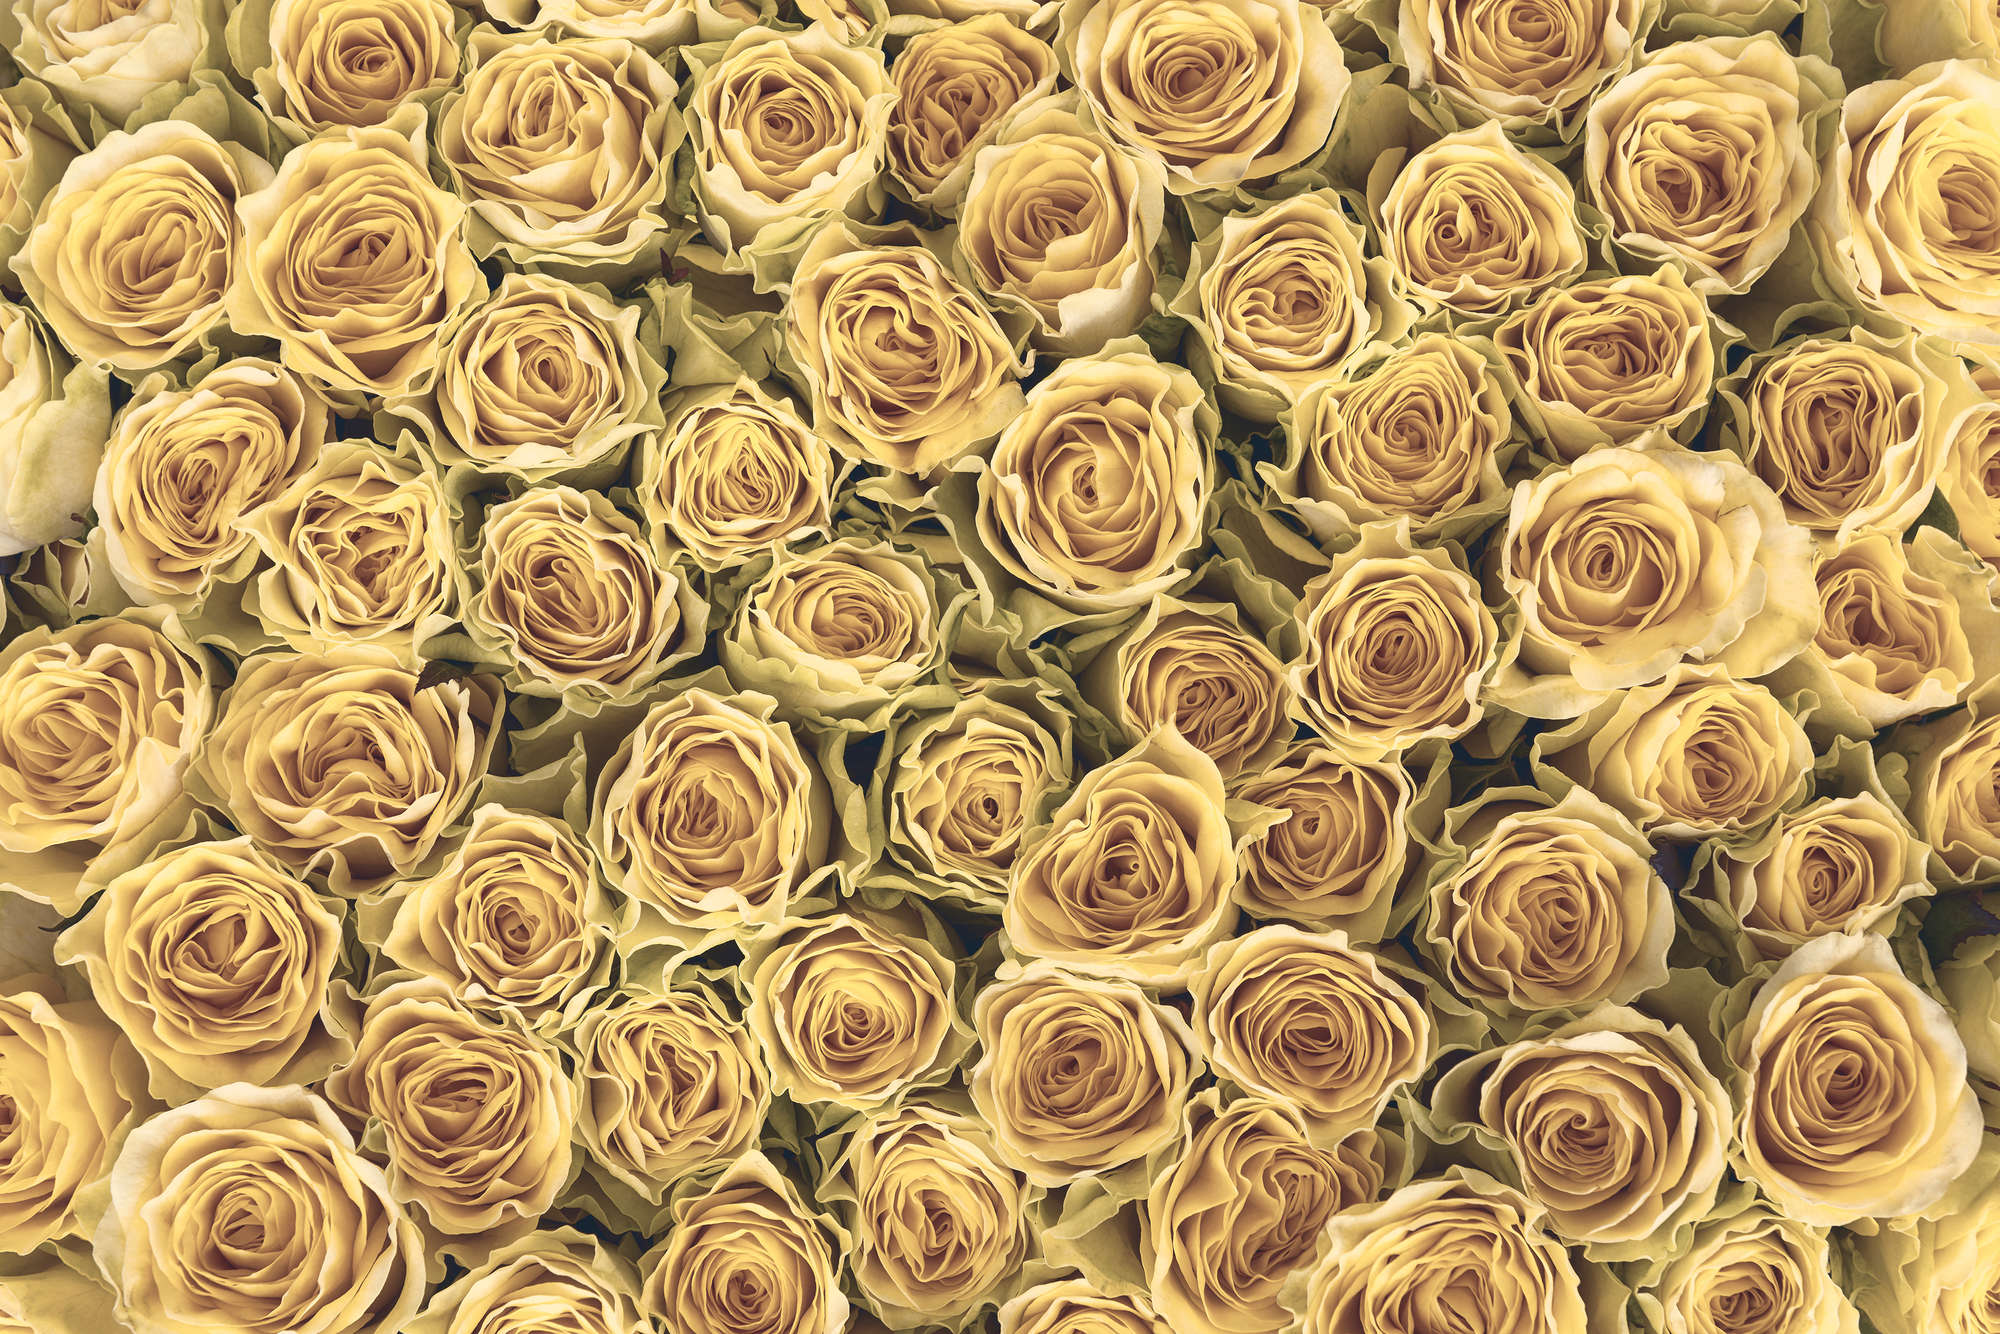             Papier peint végétal Roses dorées sur intissé lisse premium
        